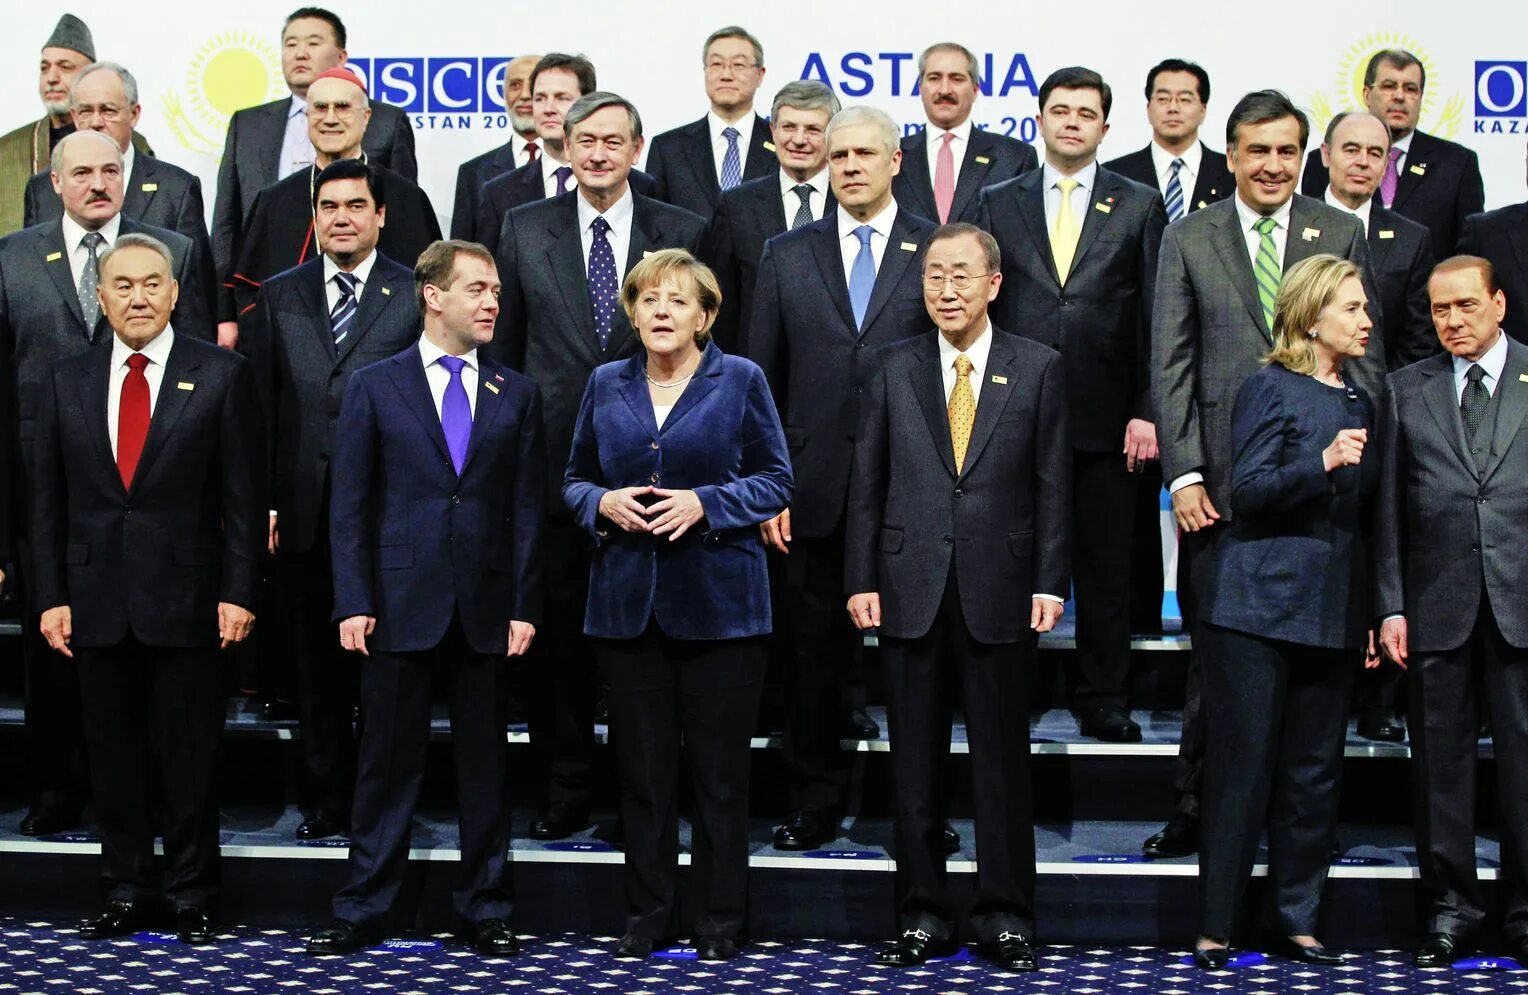 Европа саммит. Саммит ОБСЕ Астана 2010. Саммит ОБСЕ В Астане. Саммит 1999.